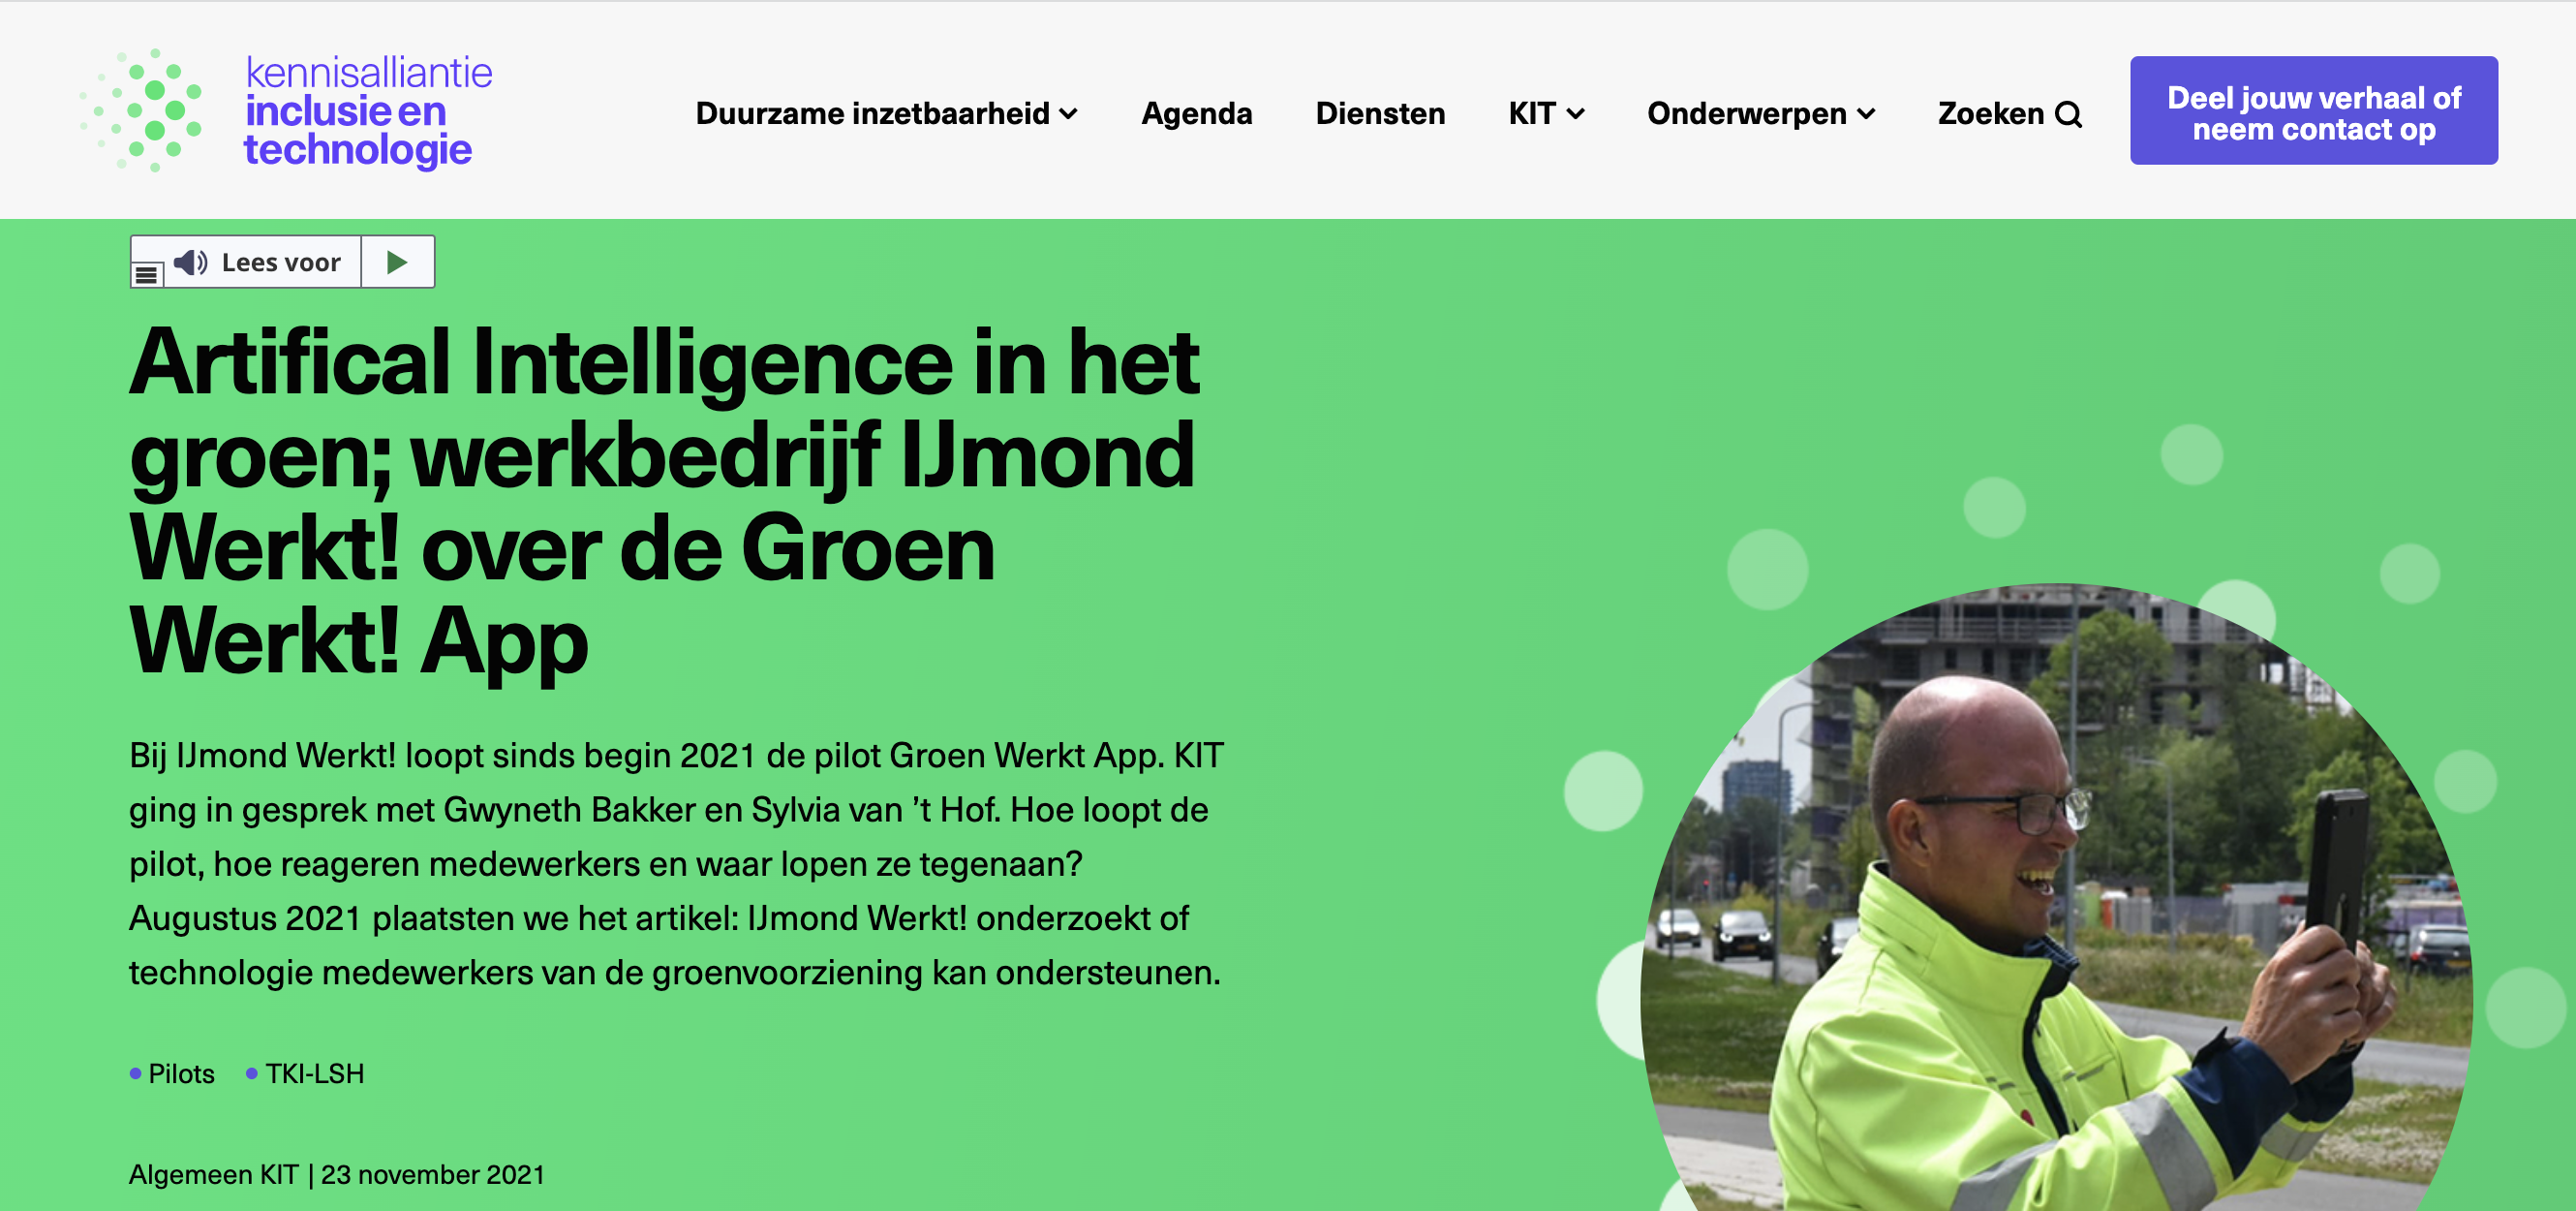 Artikel op de site van KIT (Kennisalliantie Inclusie en technologie) over onze Groen Werkt! app